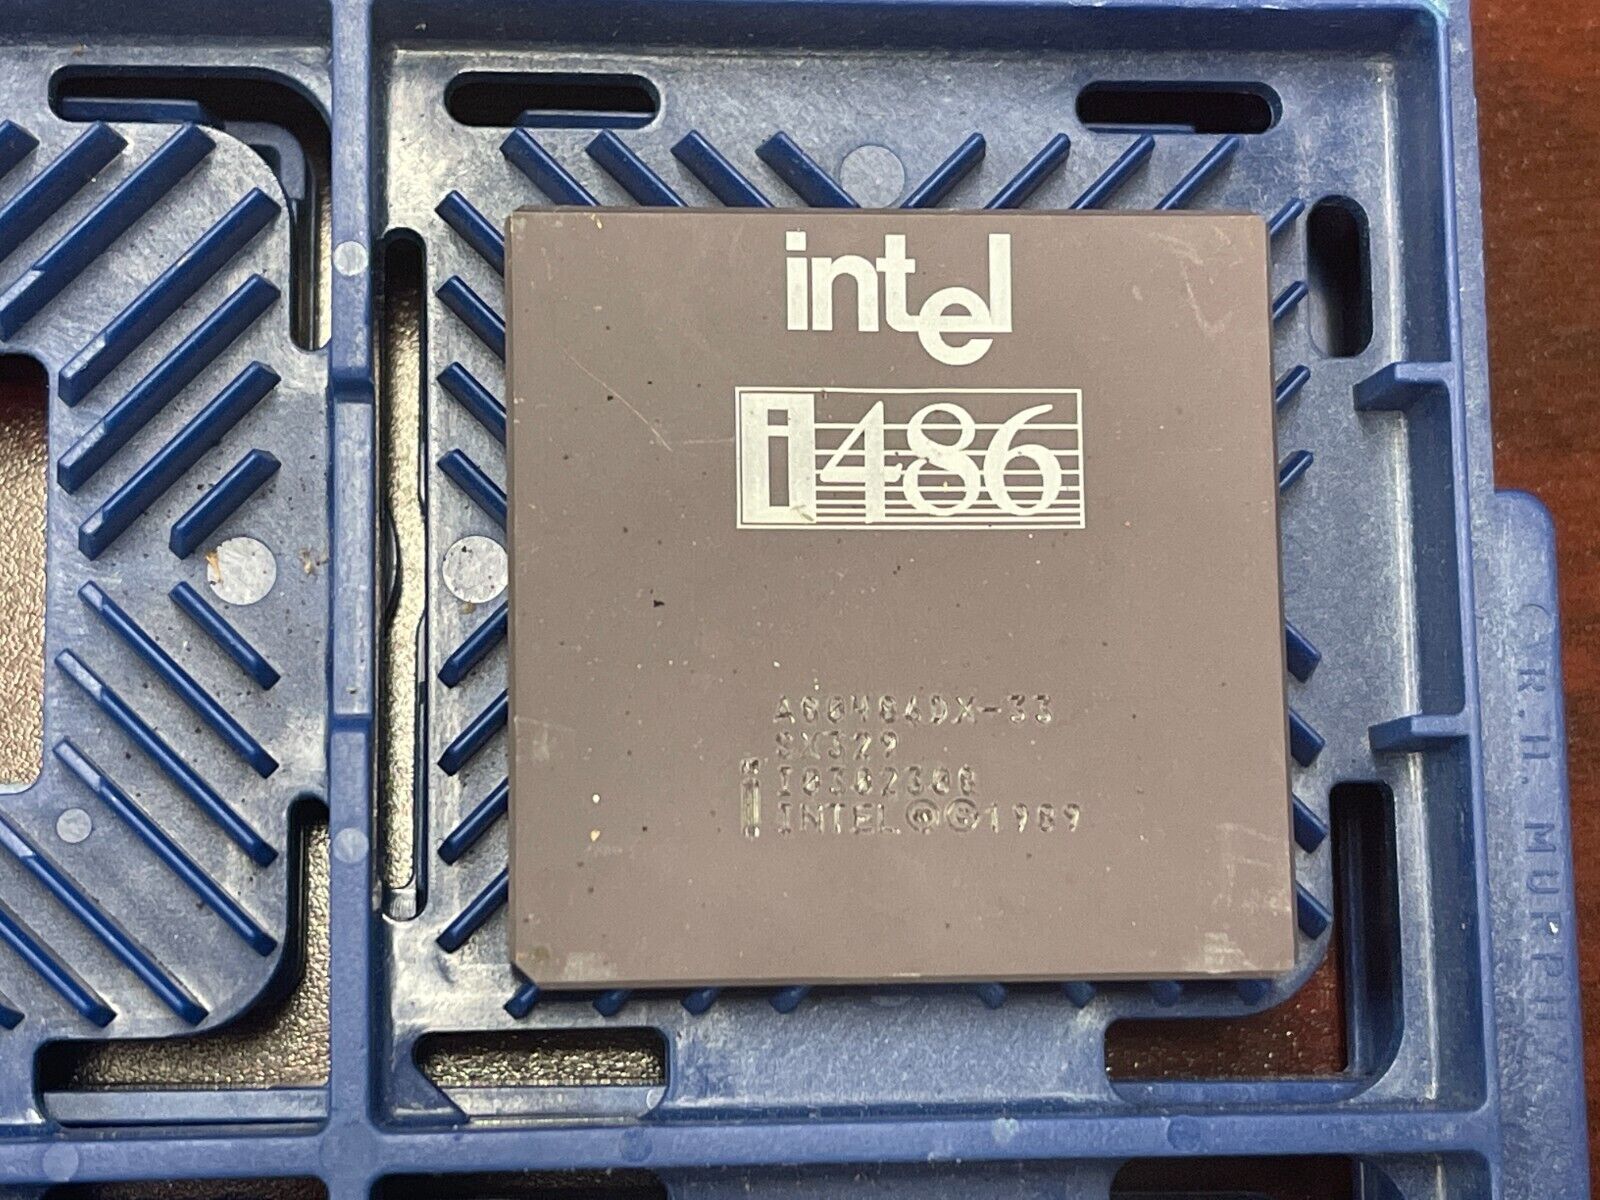 Intel SX329 i486DX/33 CPU A80486DX-33